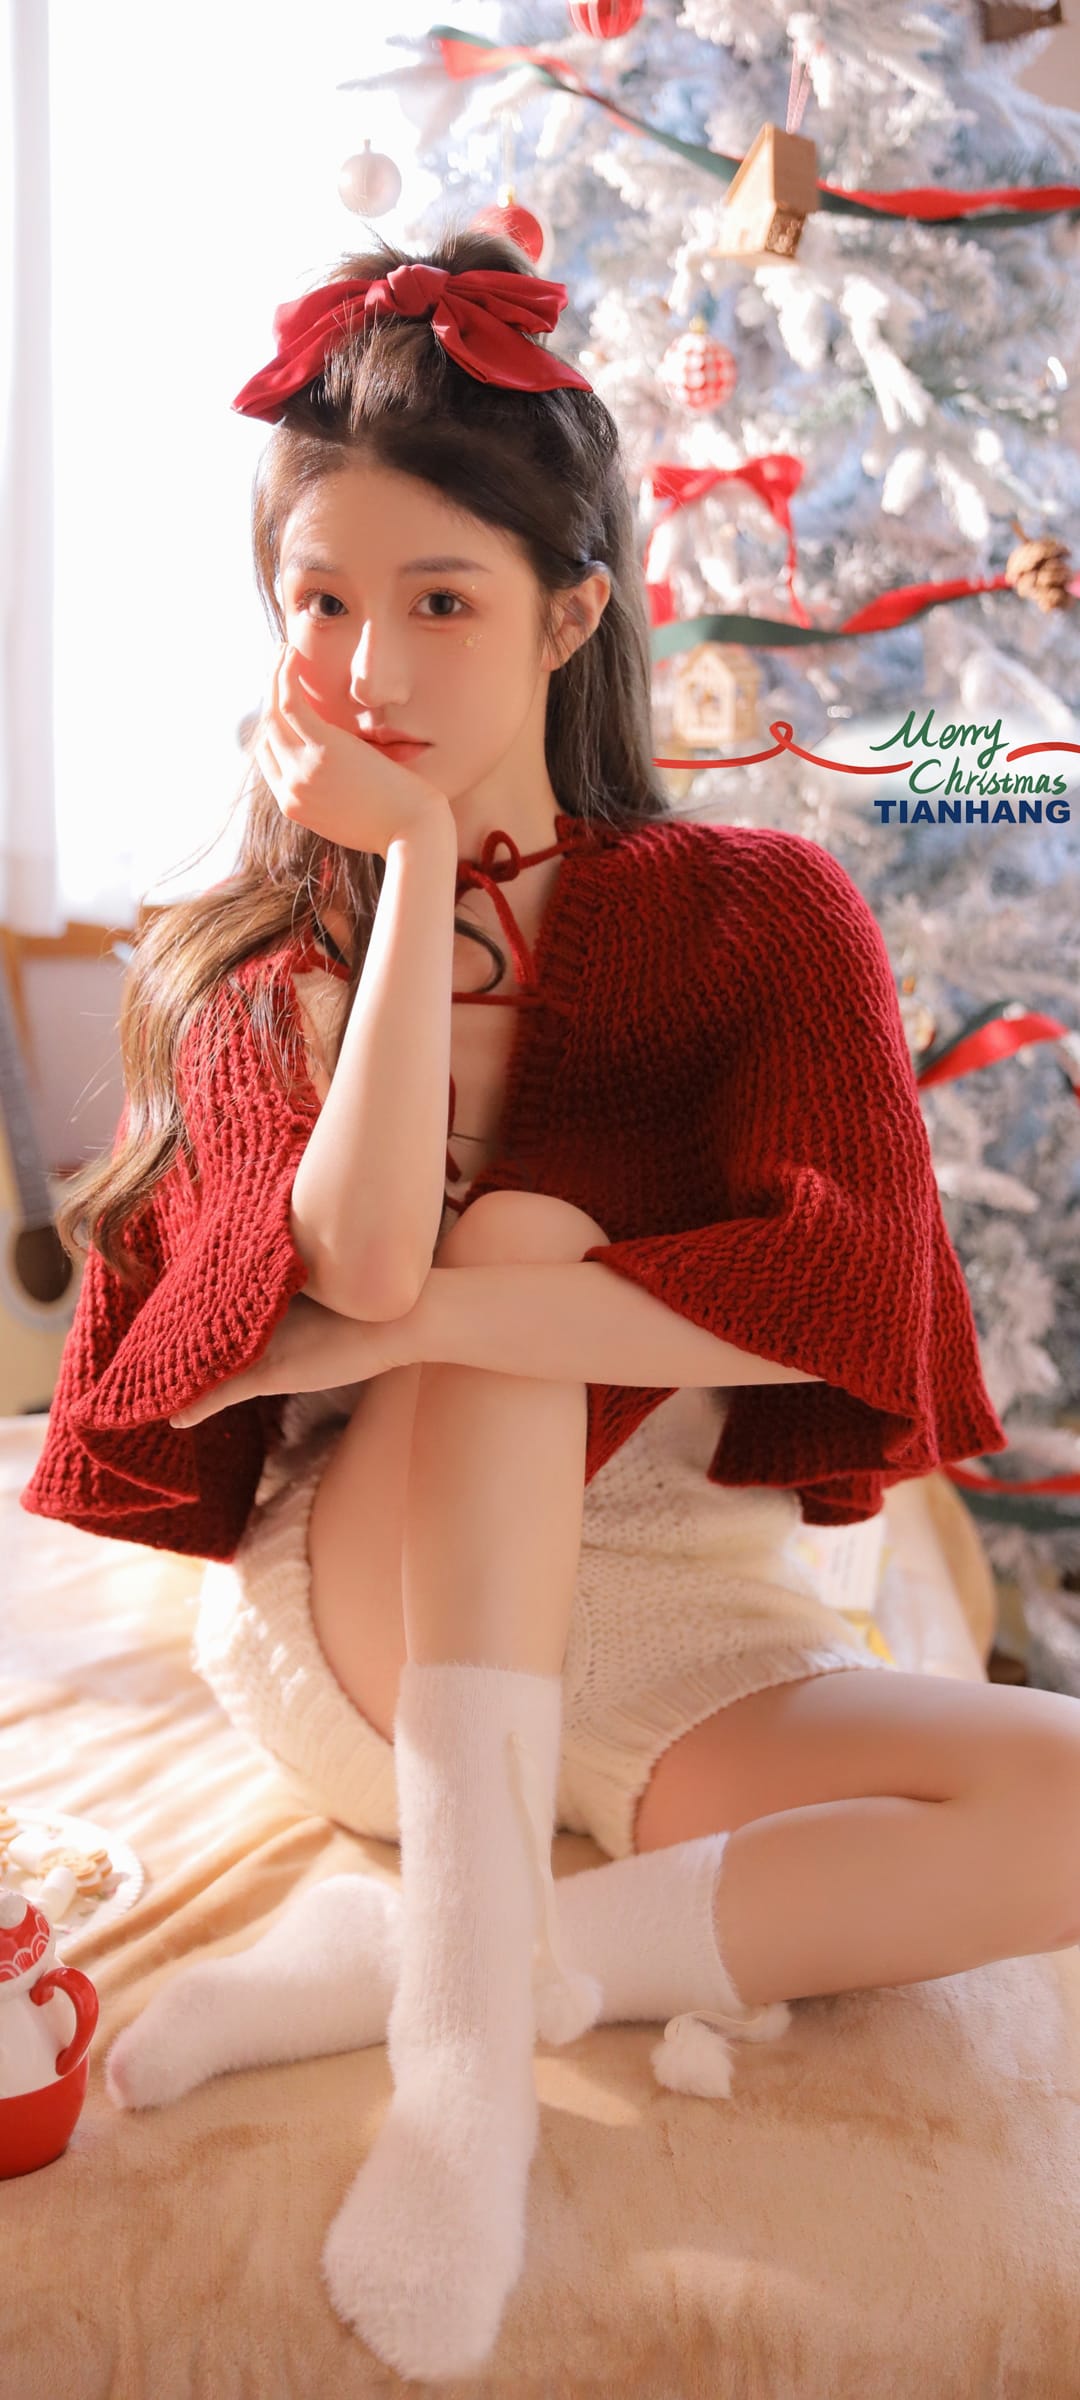 圣诞美女张腾月红色毛衣好看身材高清手机壁纸